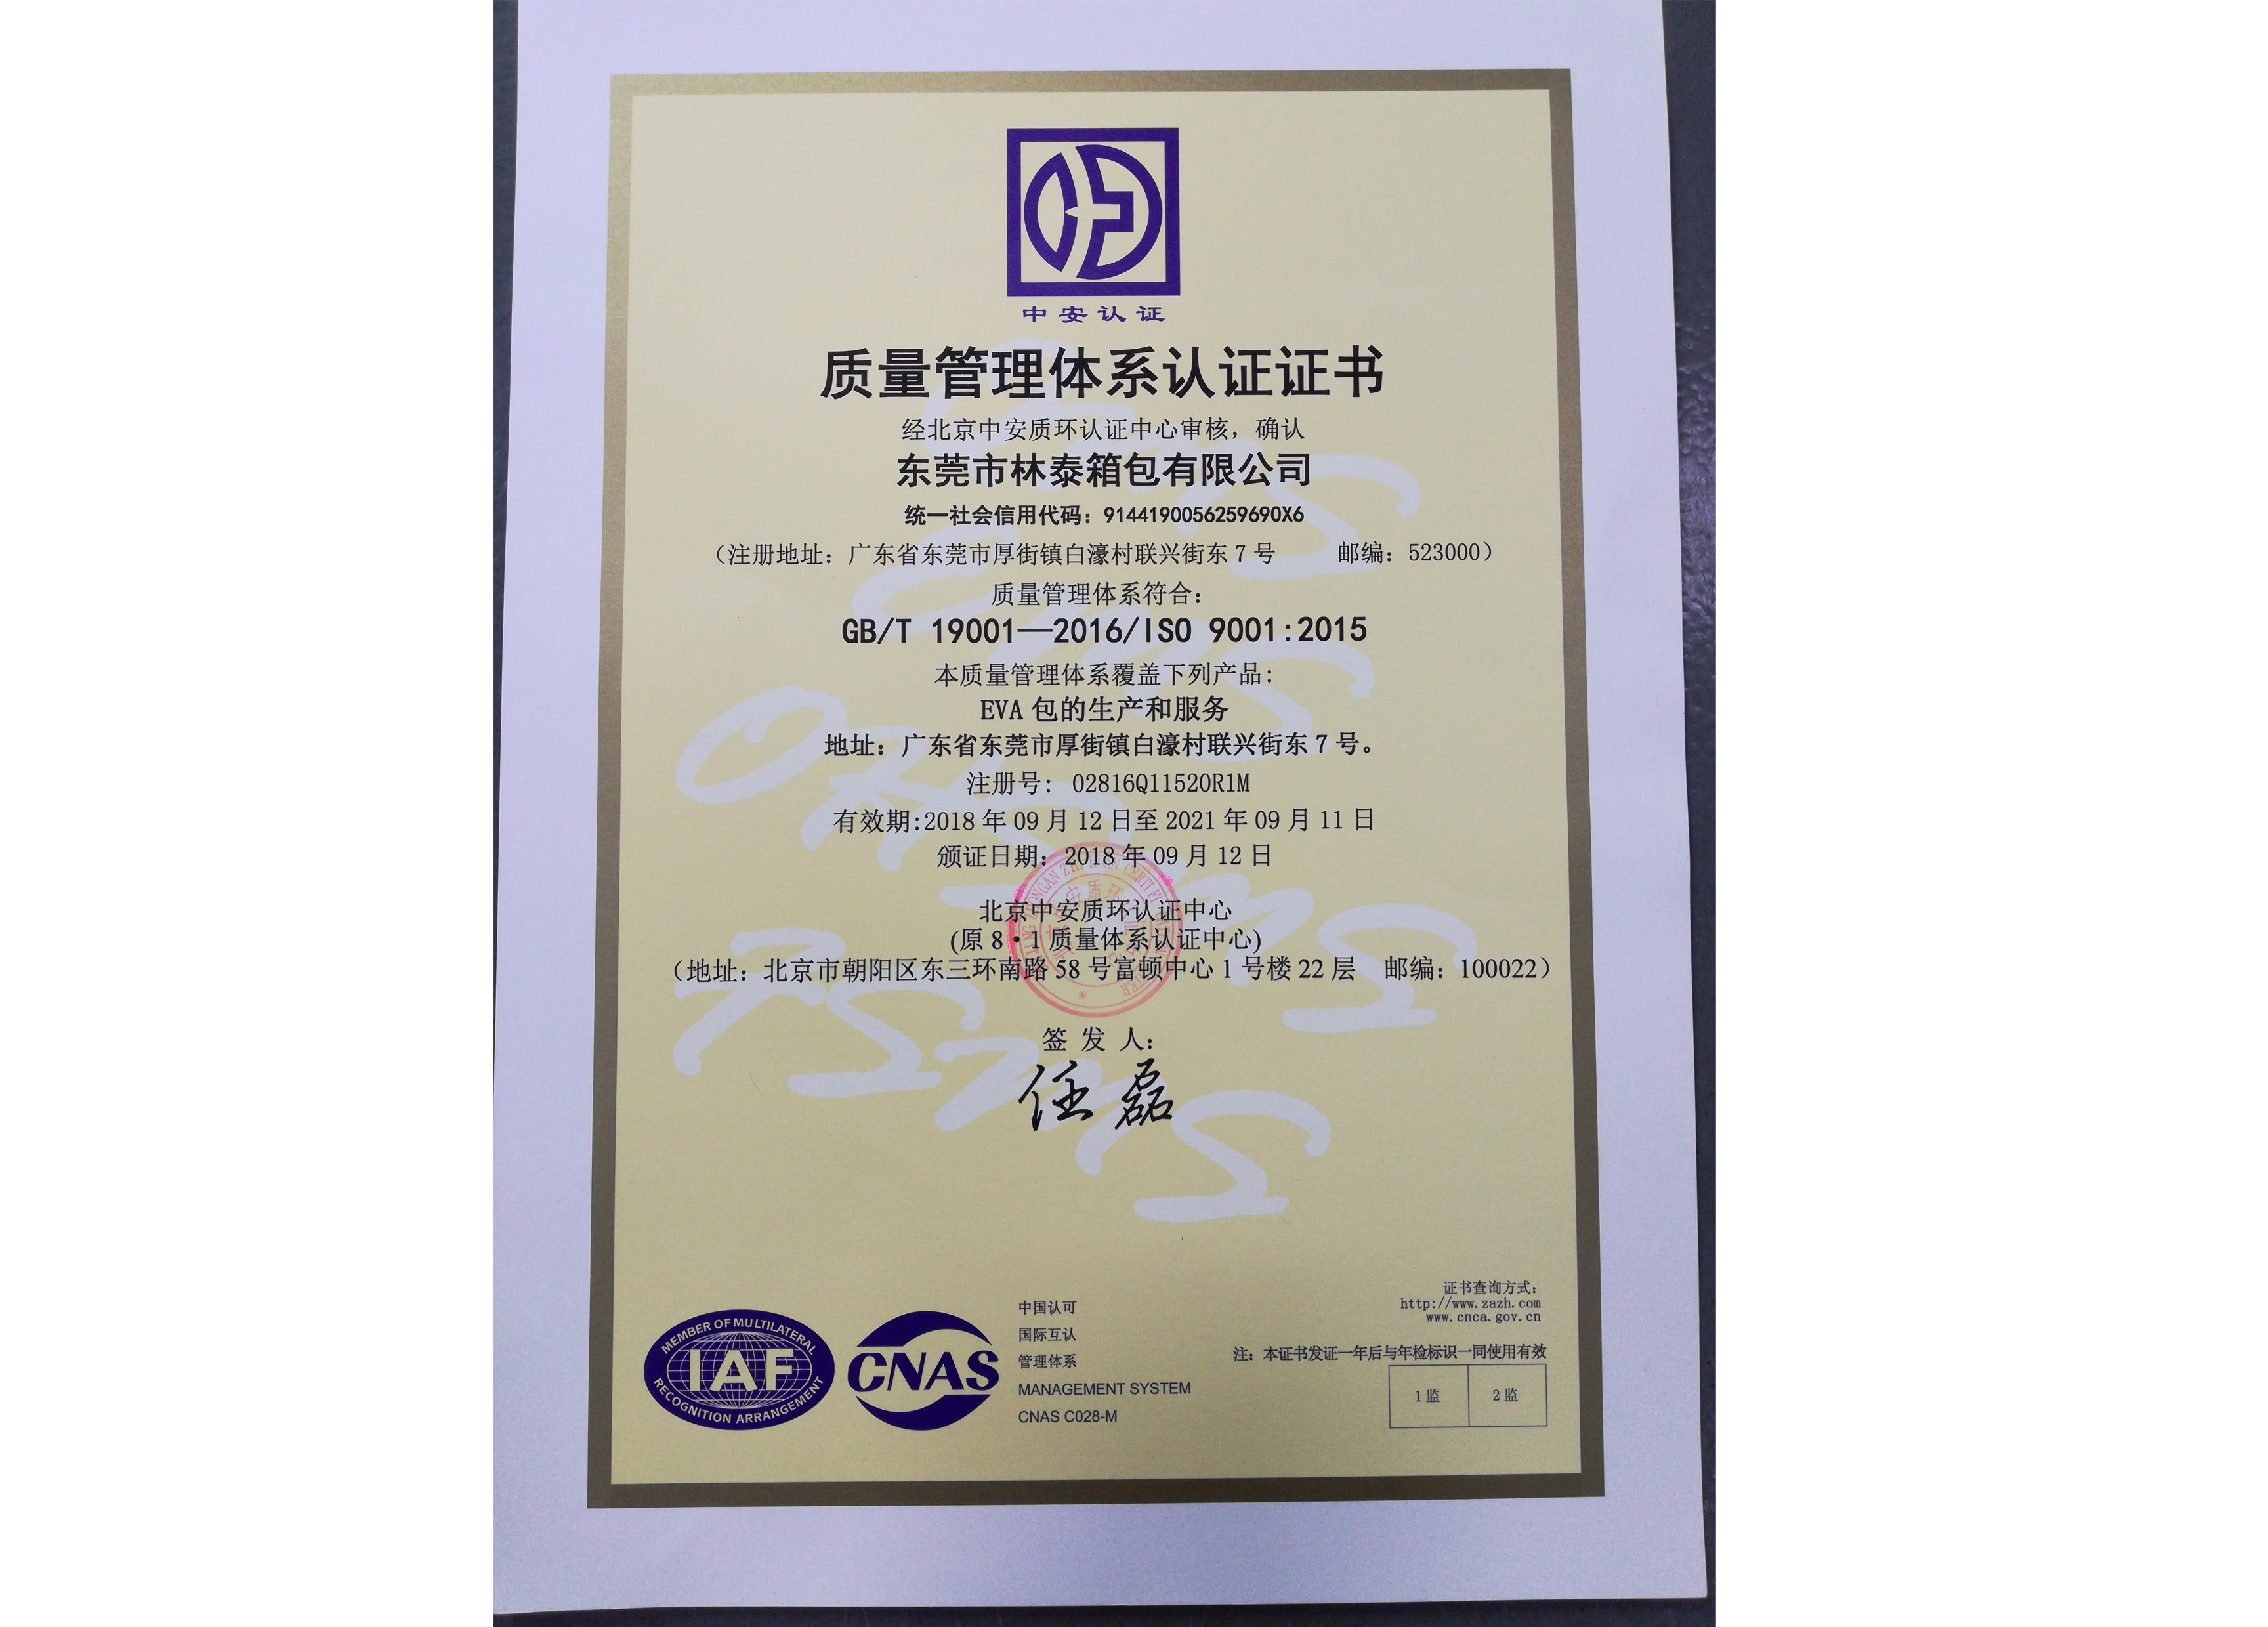 ISO9001-中文版